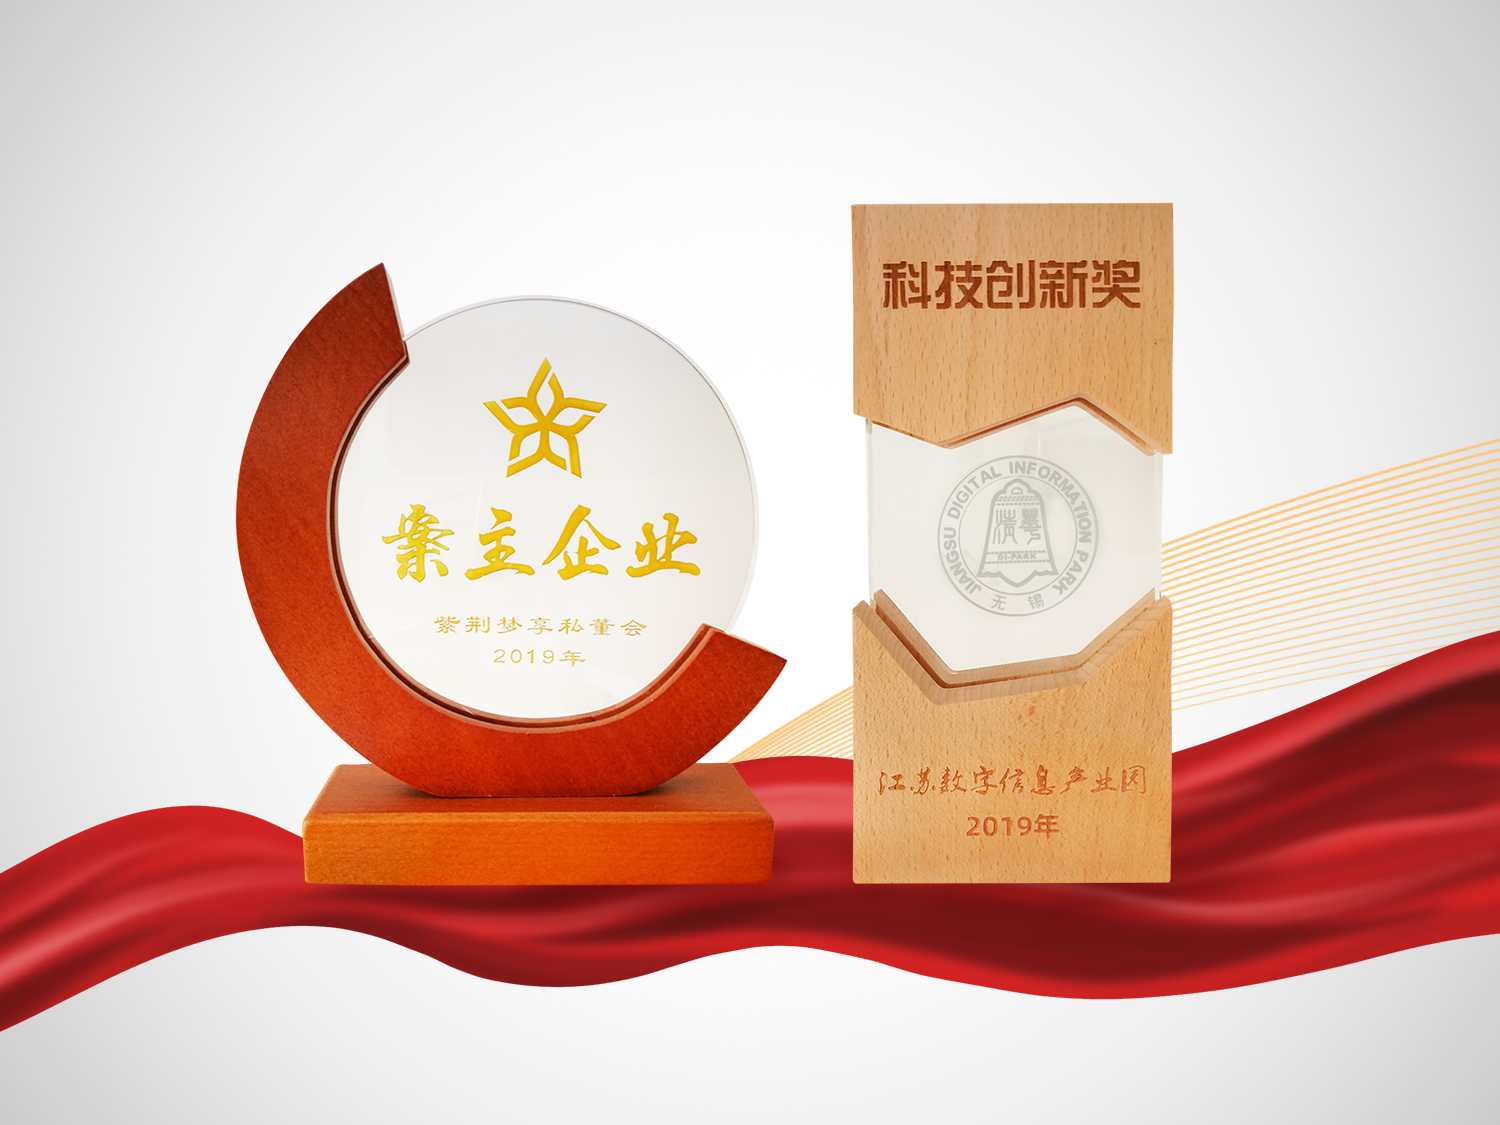 凤谷节能荣获江苏数字信息产业园2019年度科技创新奖